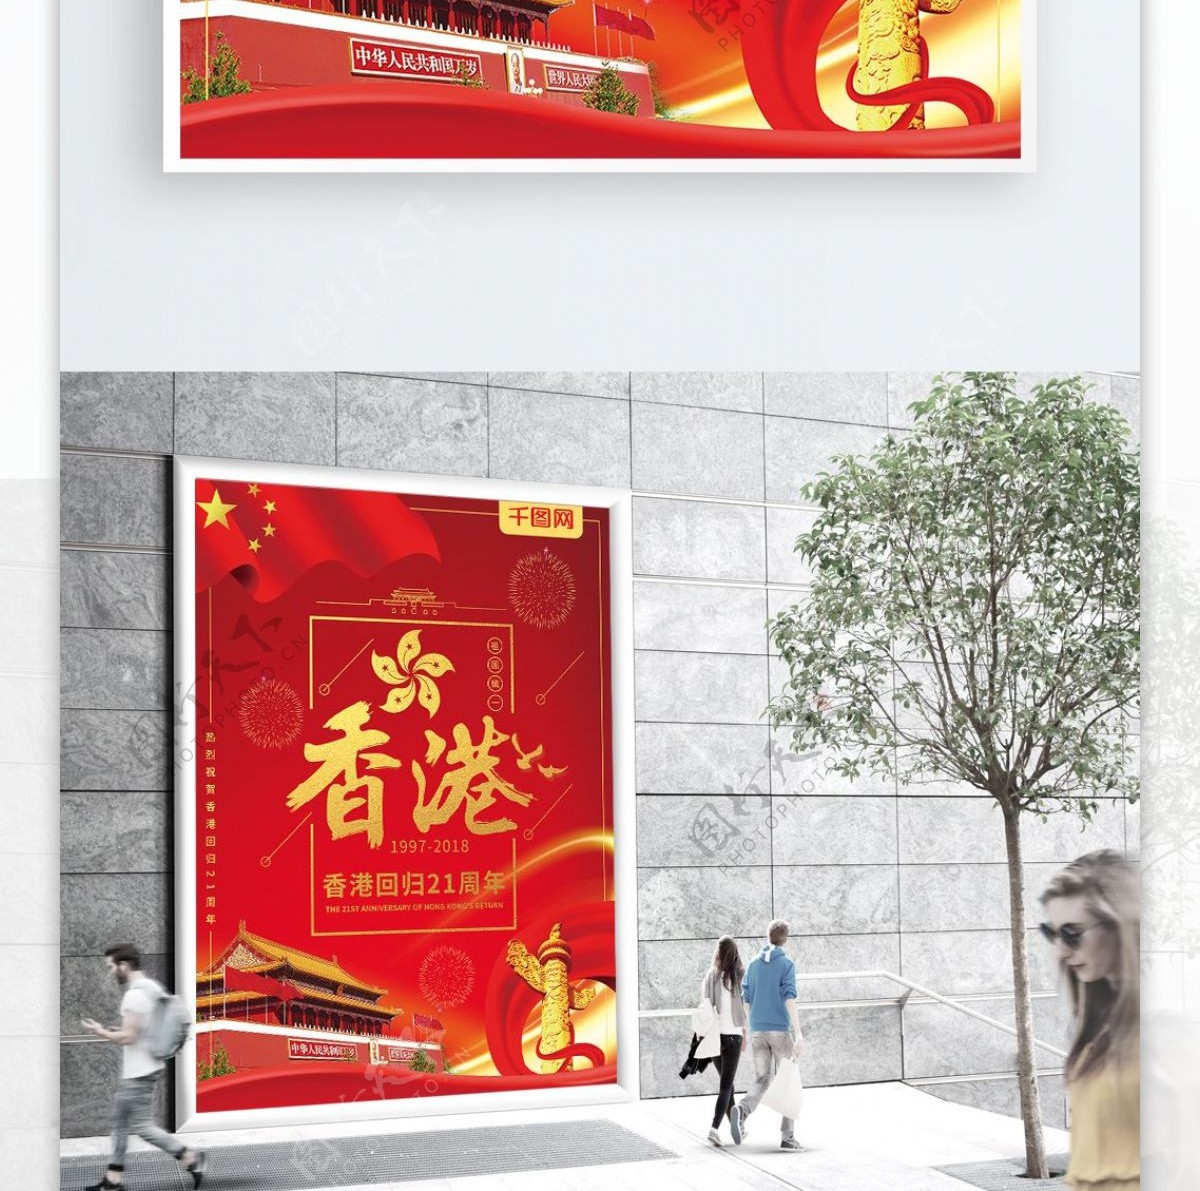 大气红金香港回归祖国21周年庆祝海报